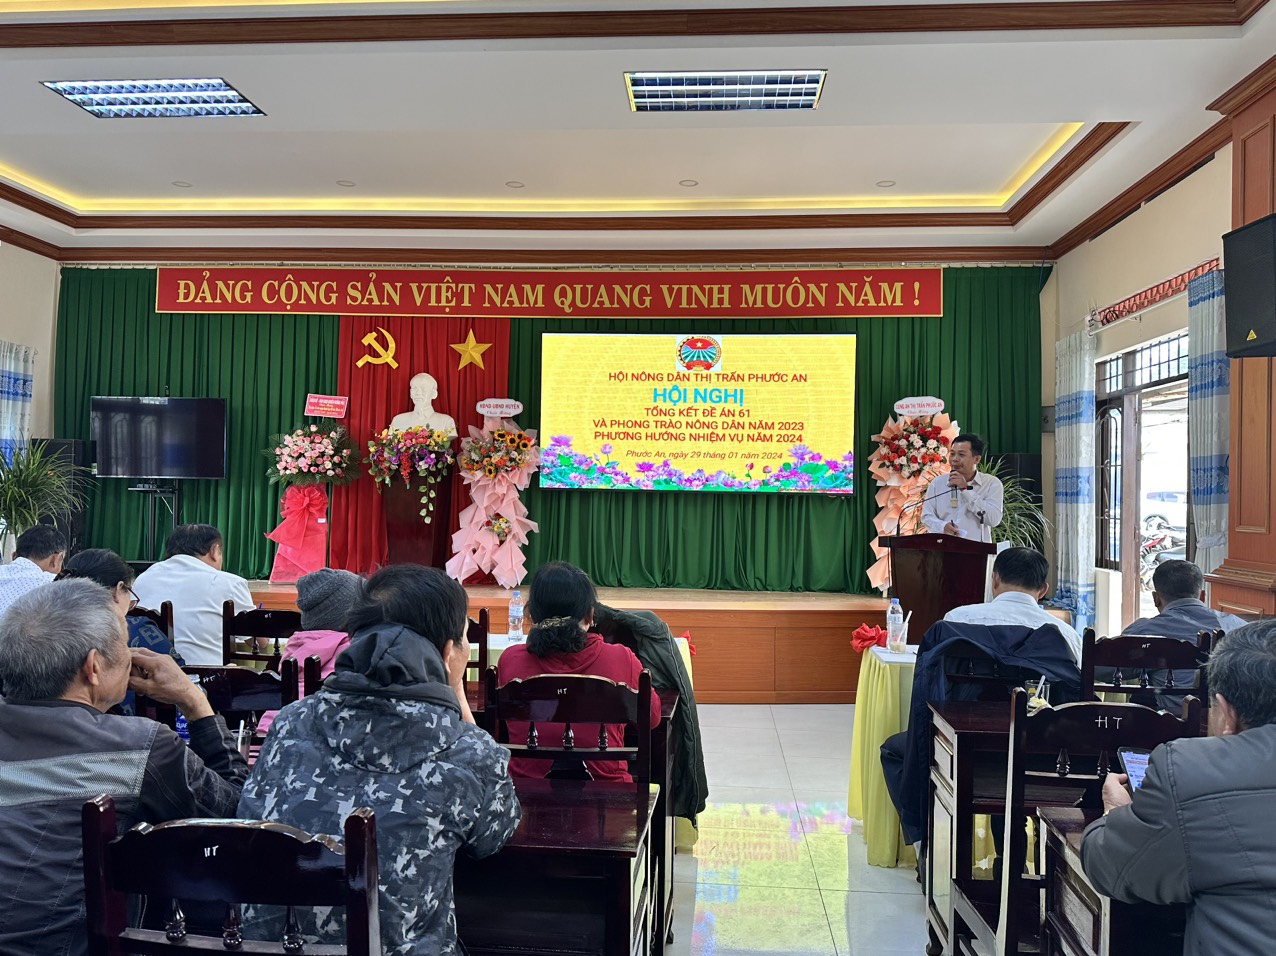 Hội Nông dân thị trấn Phước An tổ chức Hội nghị tổng kết  đề án 61 và phong trào Nông dân năm 2023, triển khai phương hướng, nhiệm vụ năm 2024.